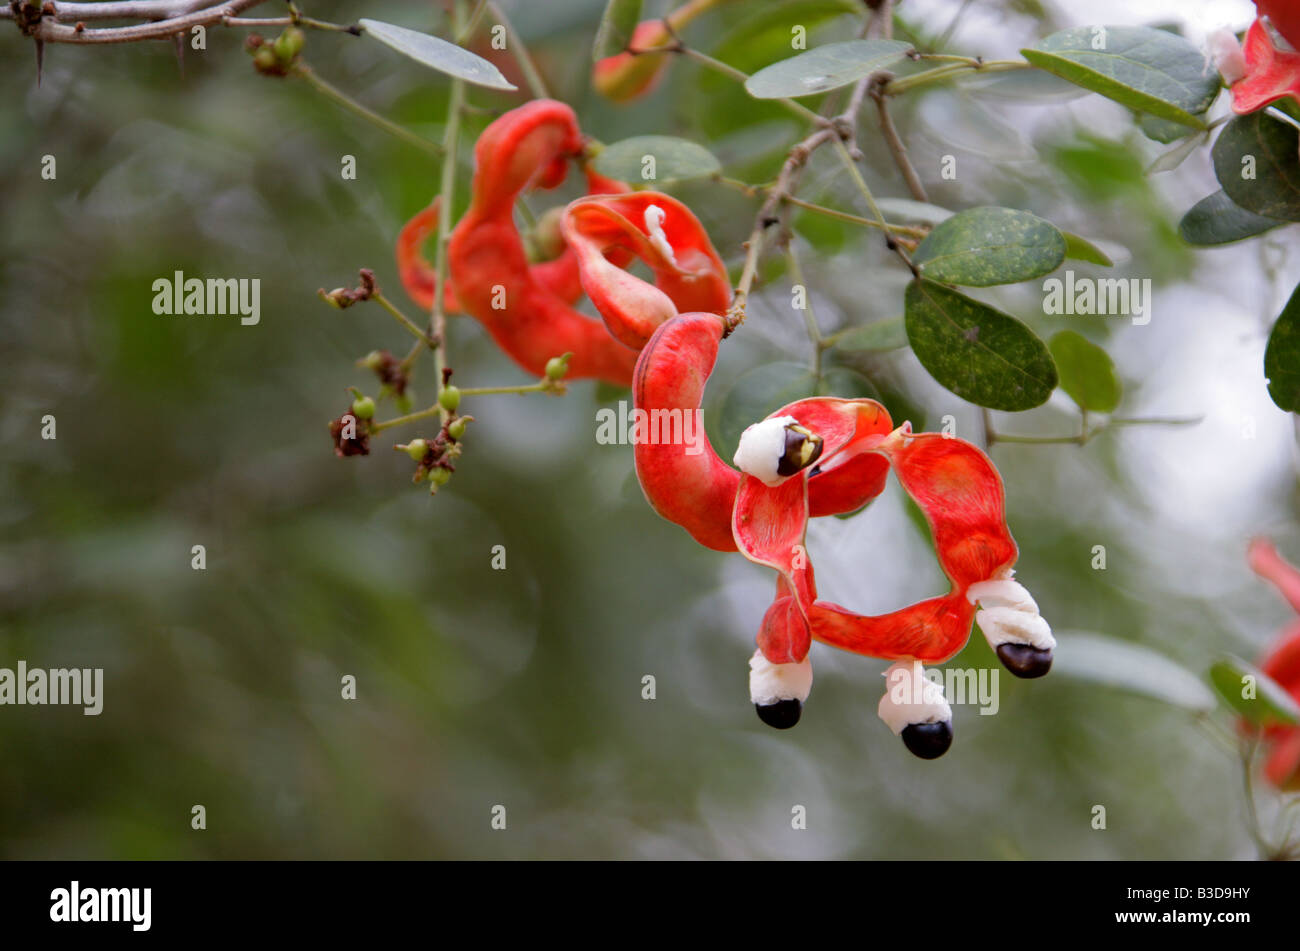 Red Fagioli baccelli crescono su un Madras Thorn Tree, Pithecellobium dulce, Fabaceae, in Uxmal sito archeologico, Yucatan, Messico Foto Stock